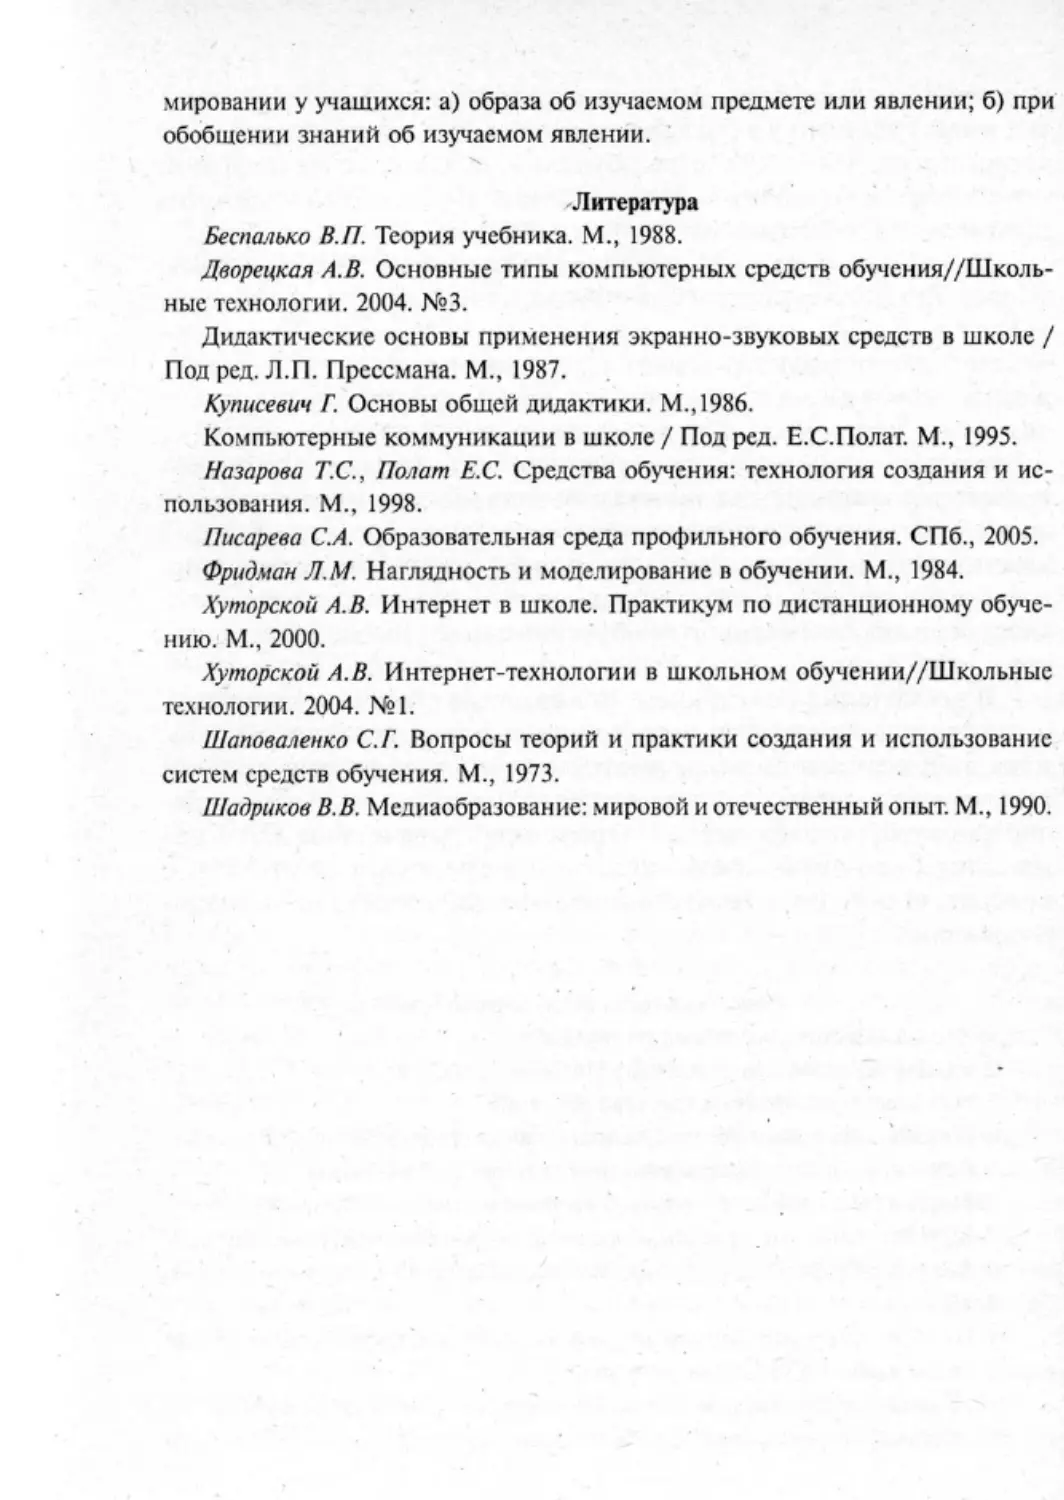 Загрекова Л.В., Николаева В.В - 0279